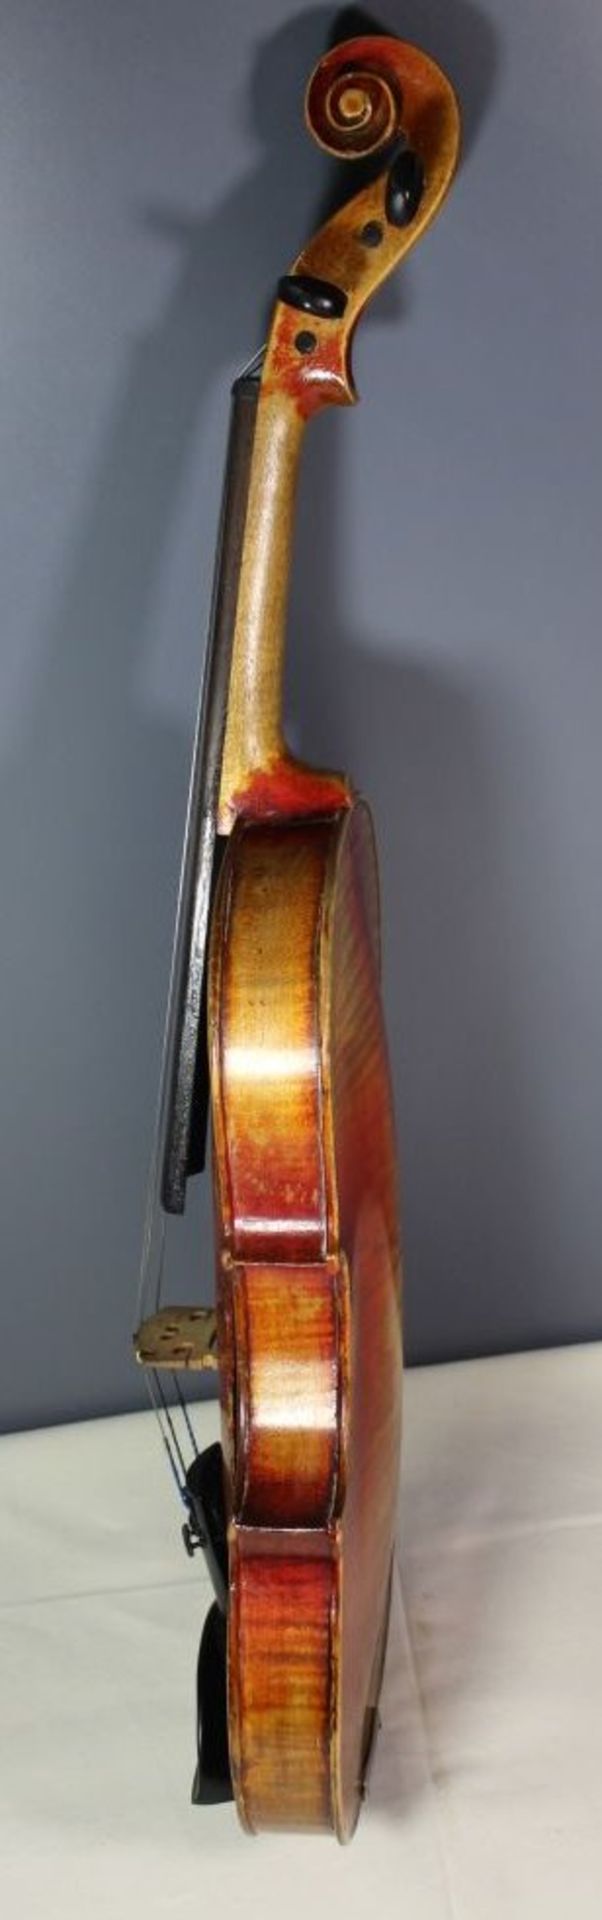 alte Geige, wohl 19. Jhd., Brandmarke "Amati", in neuzeitl. Tasche, L-60cm.- - Bild 2 aus 8